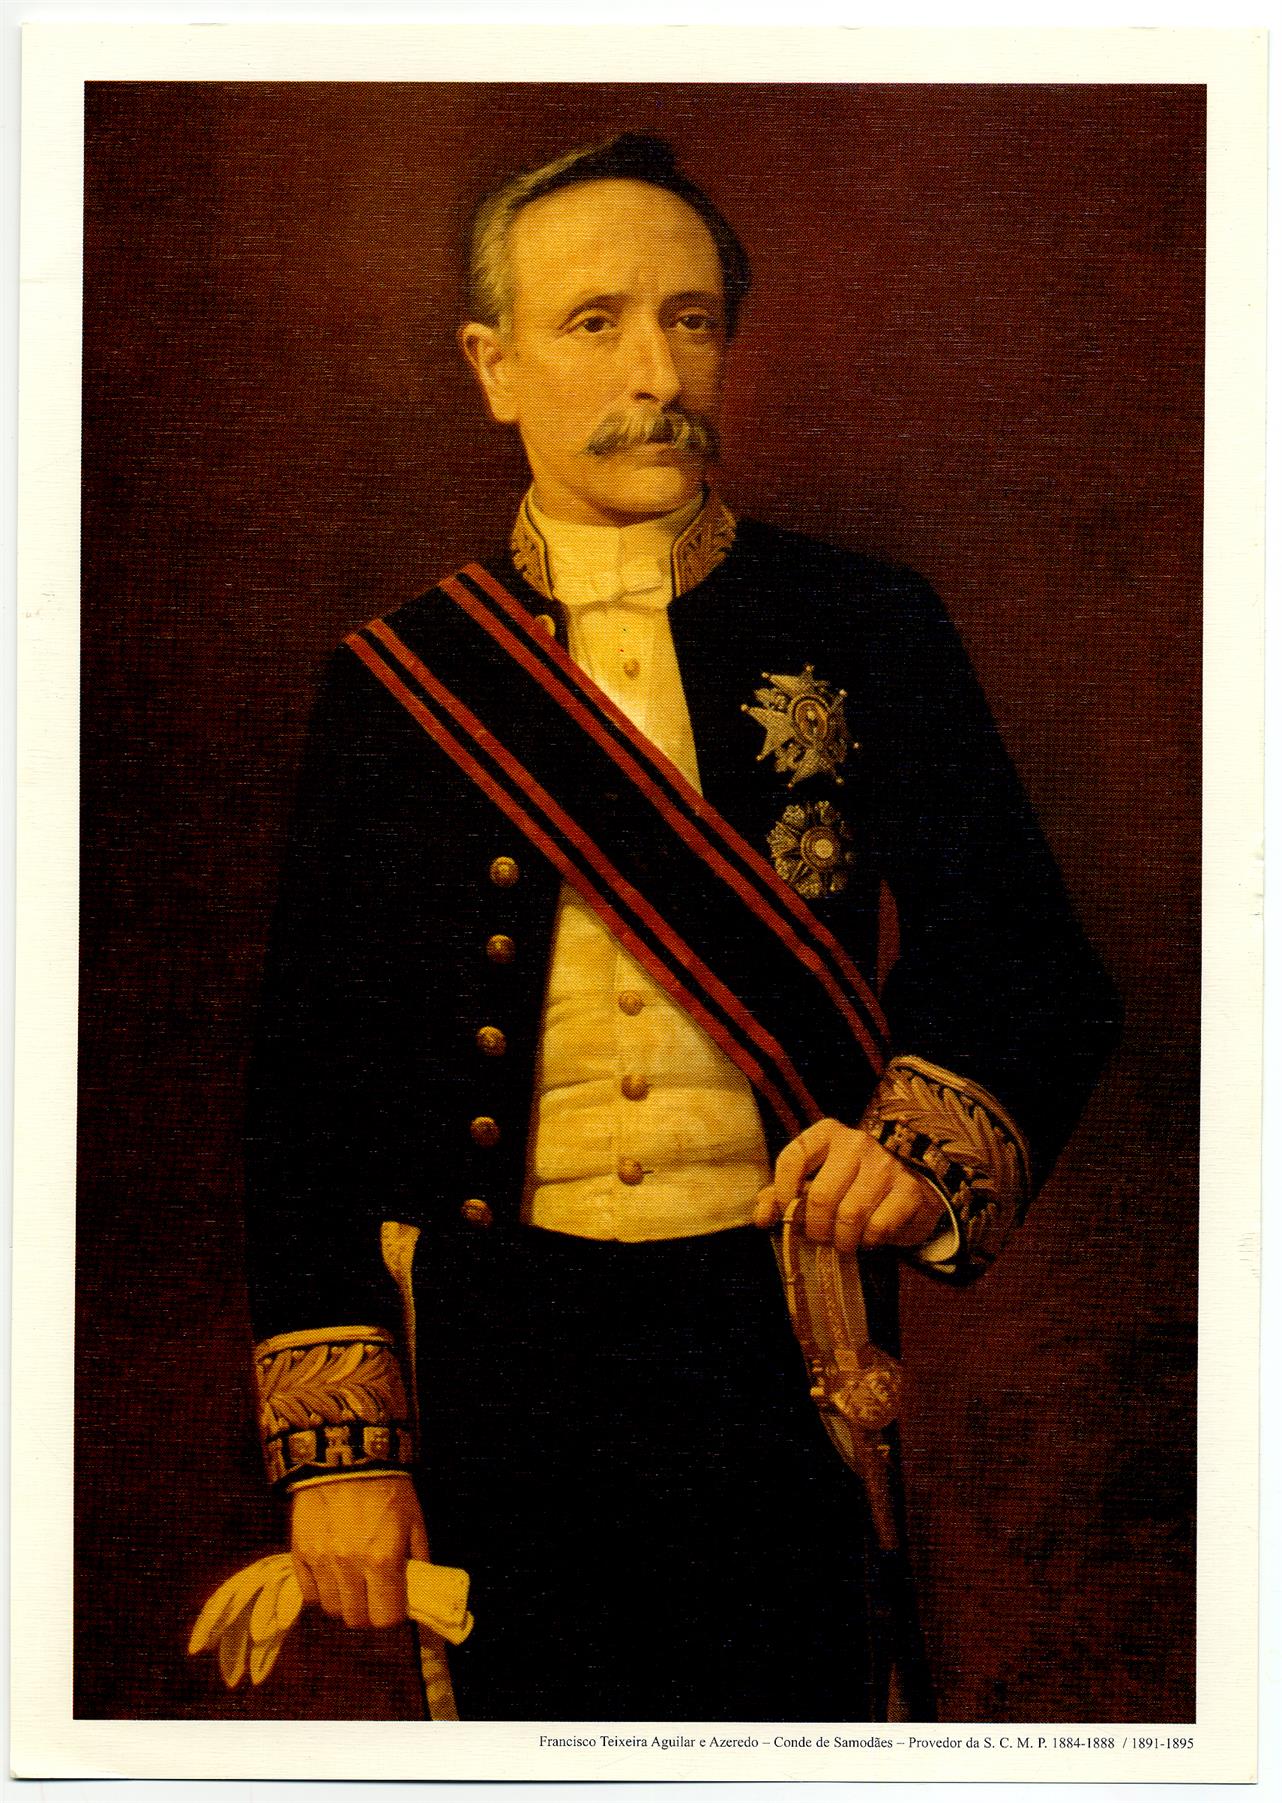 Francisco Teixeira Aguilar e Azeredo, Conde de Samodães